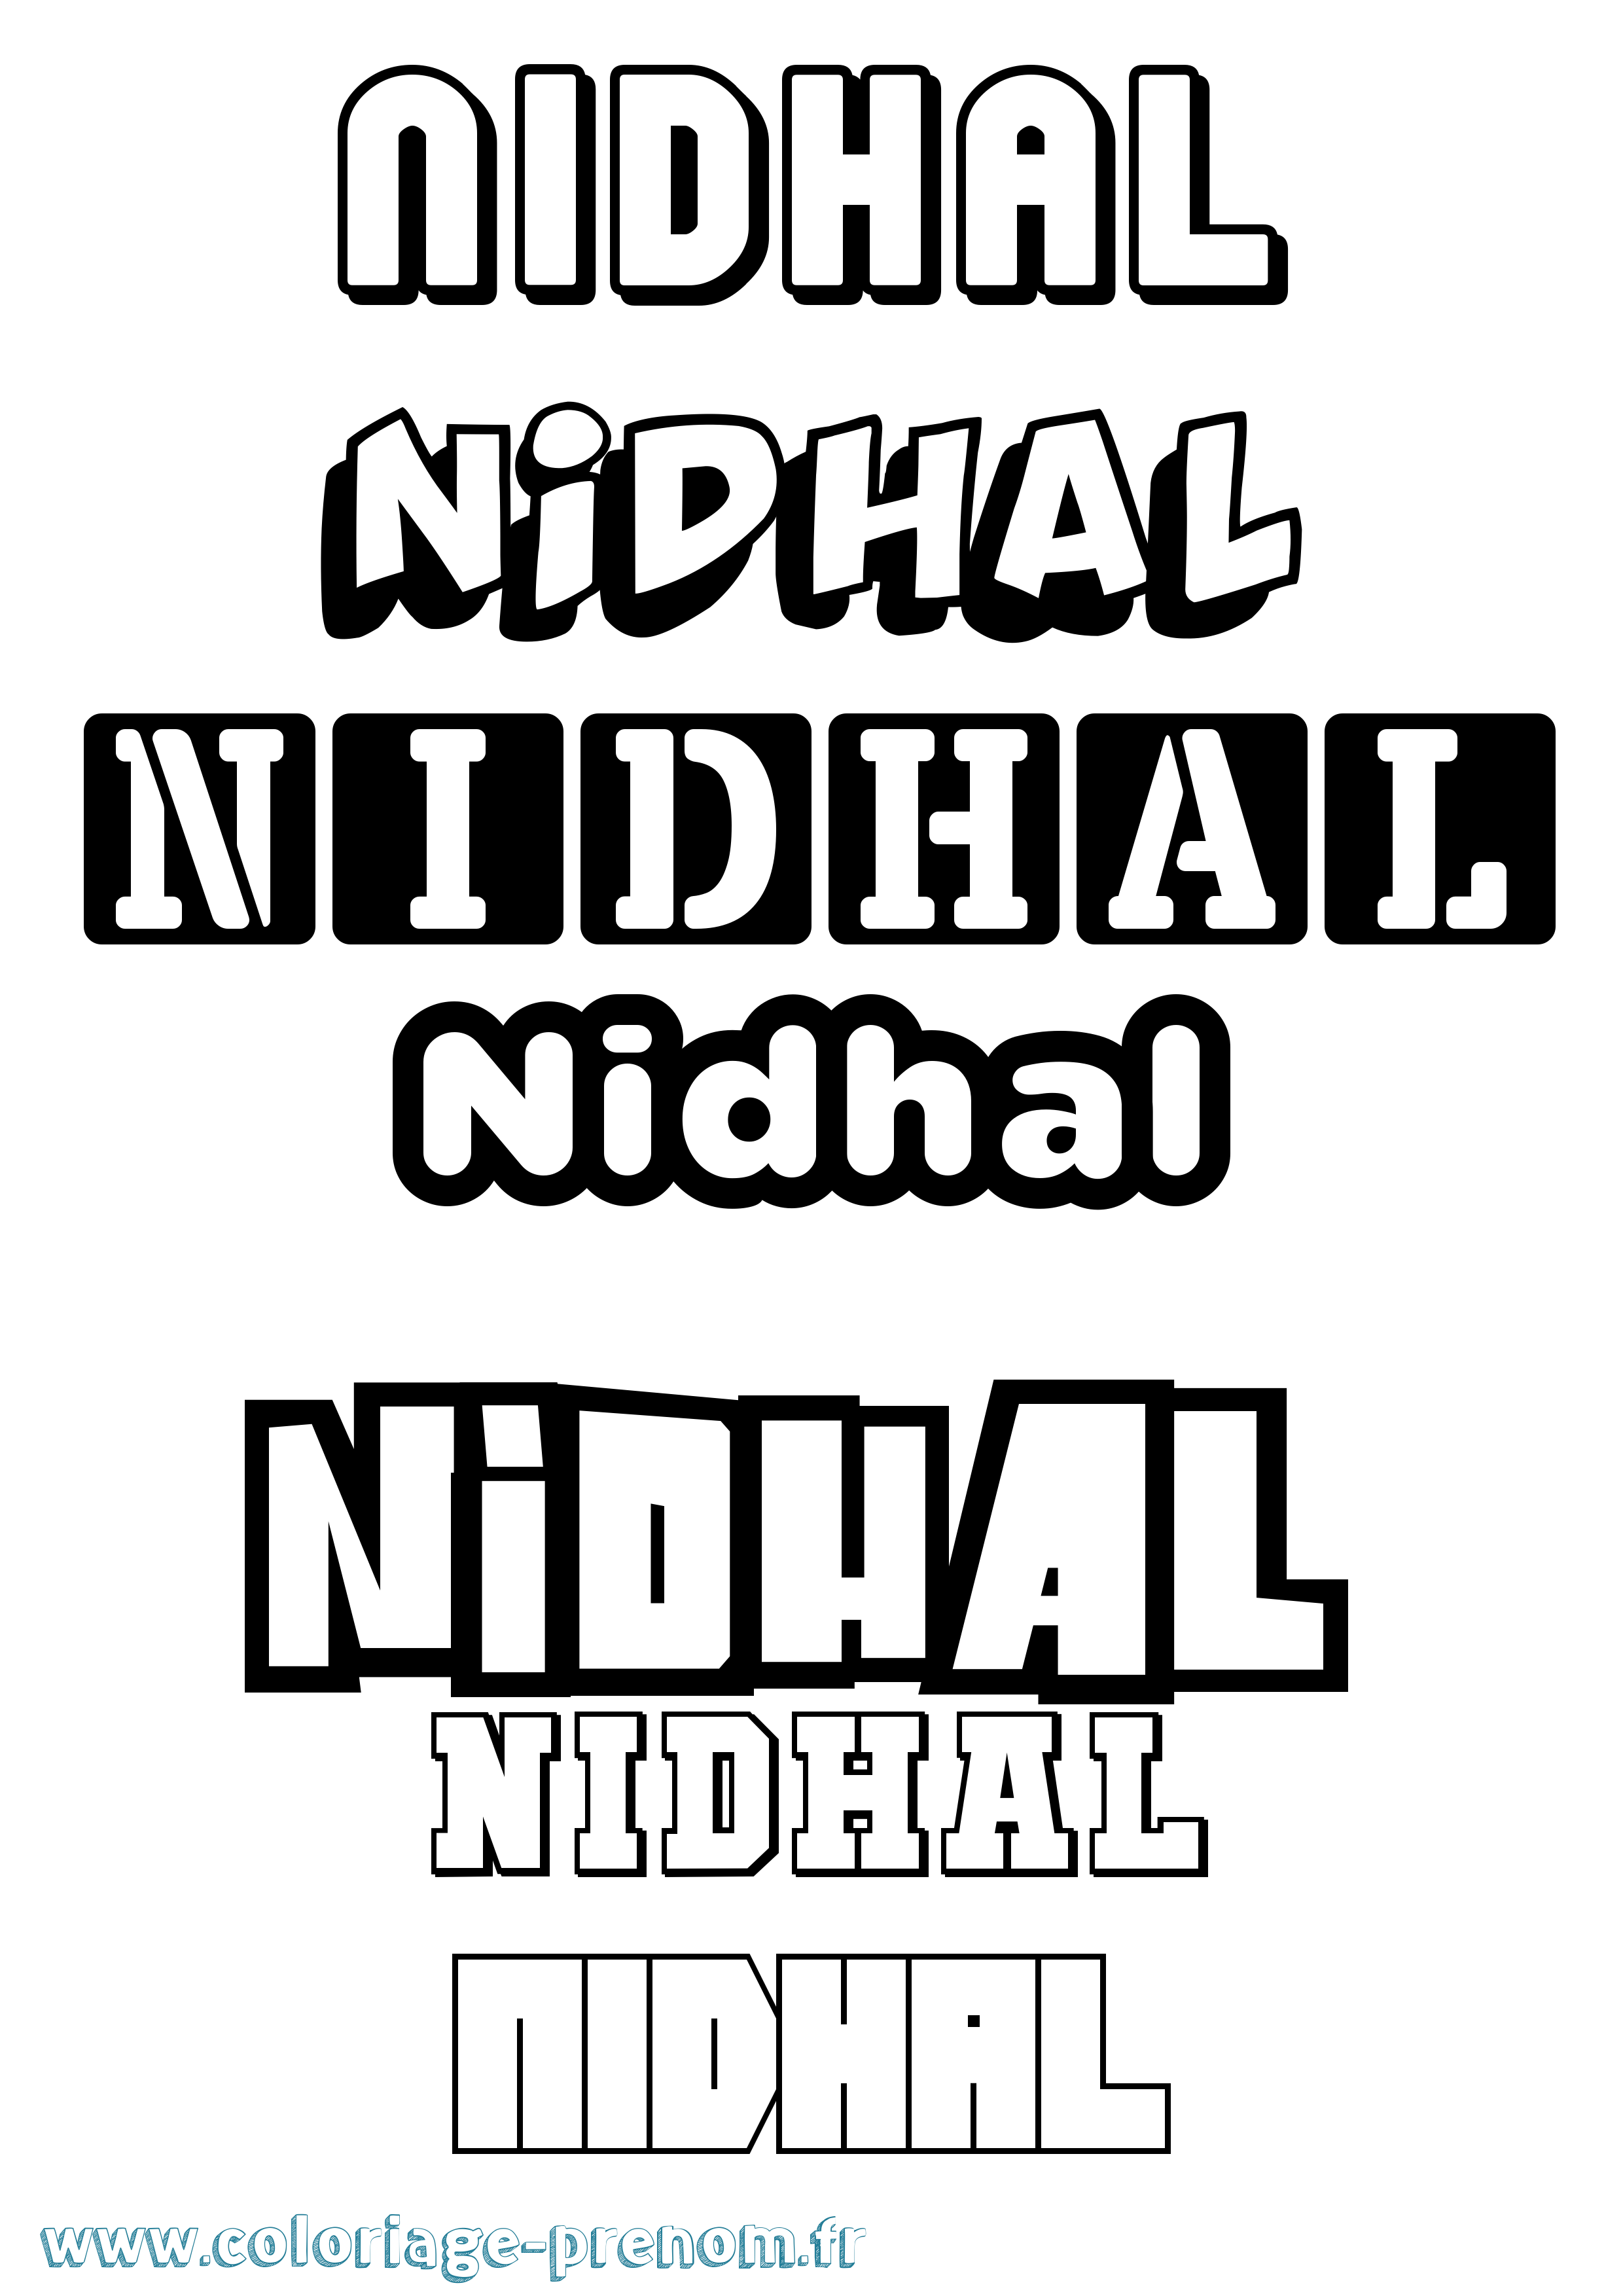 Coloriage prénom Nidhal Simple